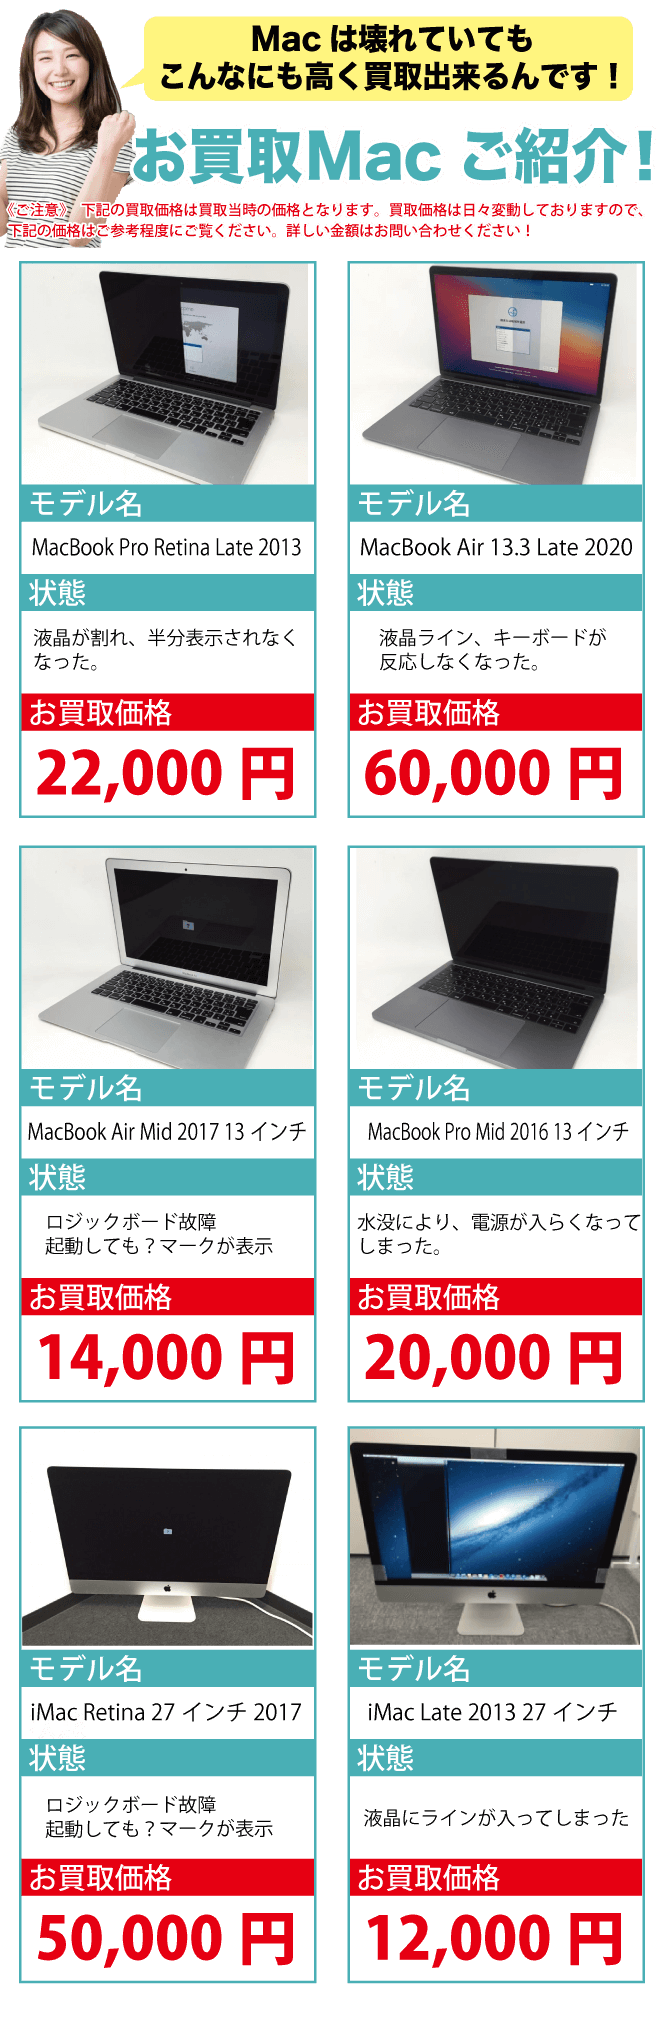 故障 Mac 買取専門【ジャンクバイヤー】ジャンクMac 買取14年の実績